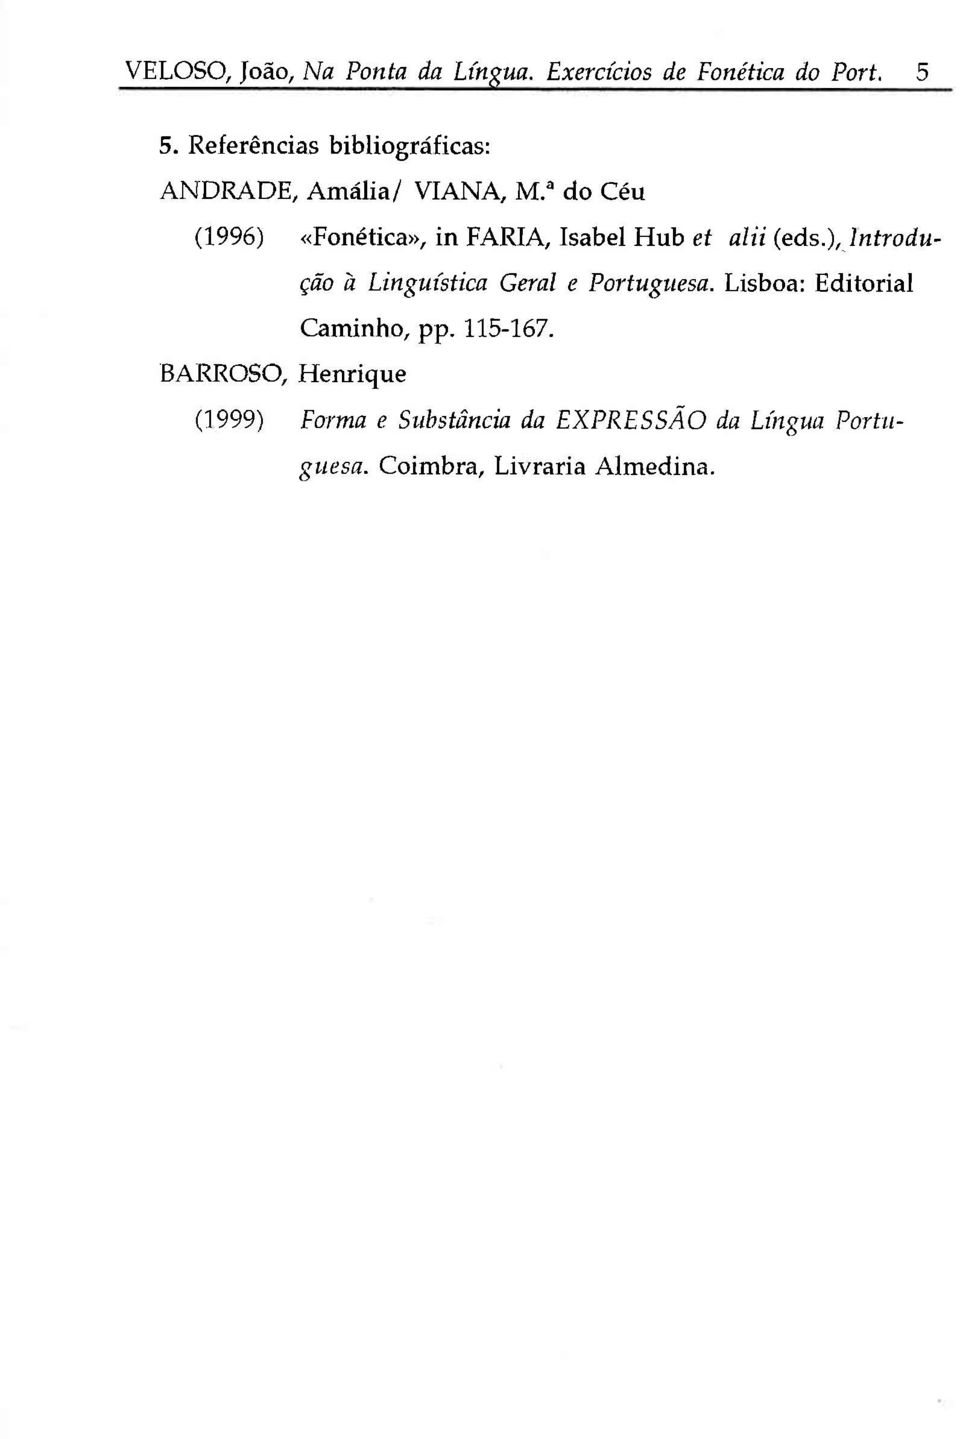 u do Céu (1996) «Fonética», in FARIA, Isabel Hub ef alii (eds.), )ntrodução à Lingr.